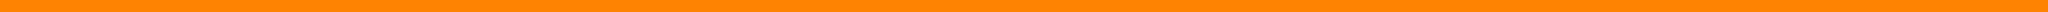 Barra arancione